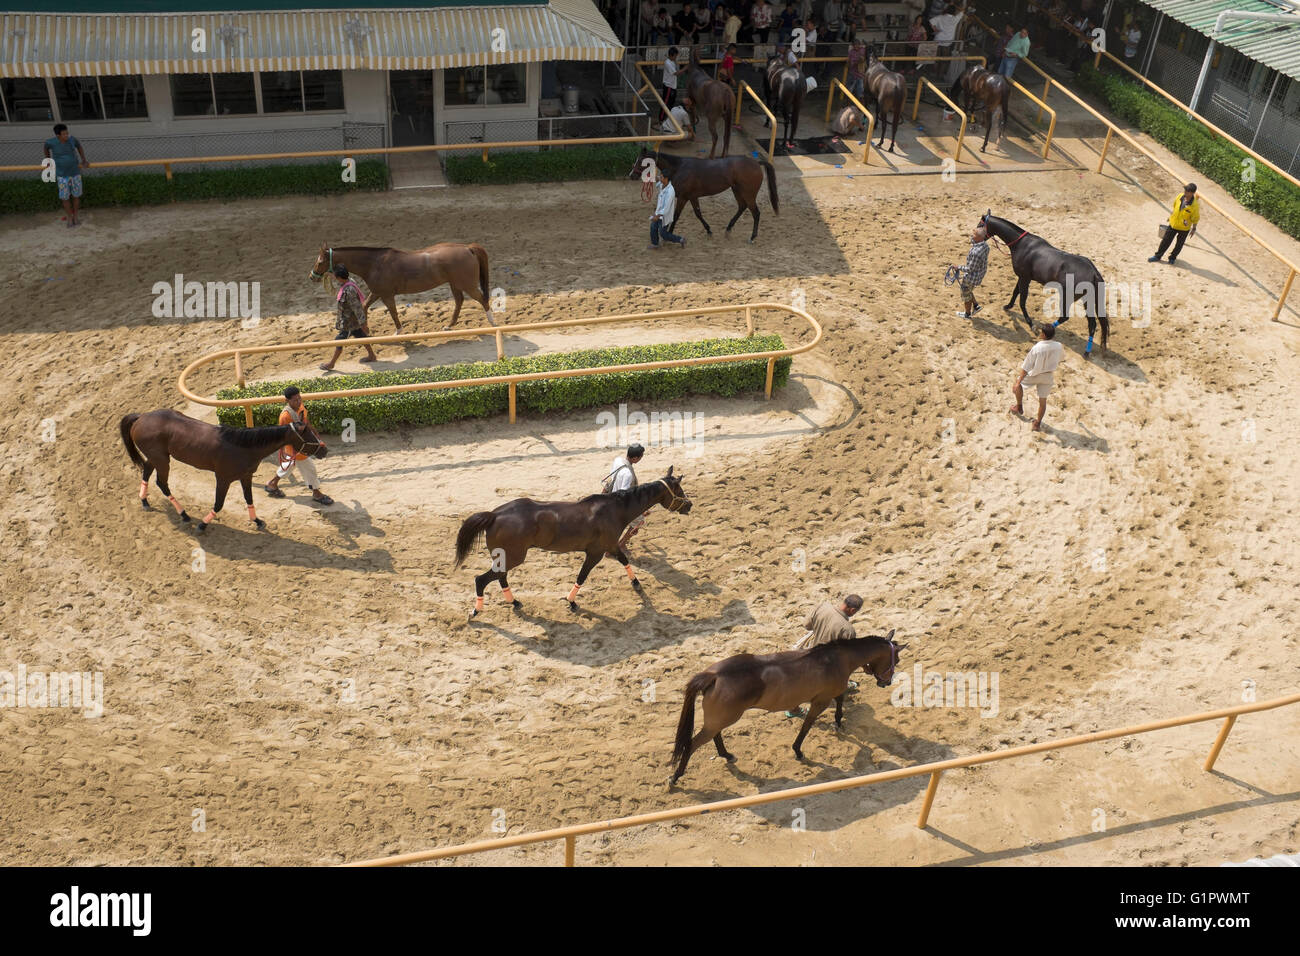 Horse Racing at the Royal Bangkok Sports Club in Bangkok Thailand Stock Photo